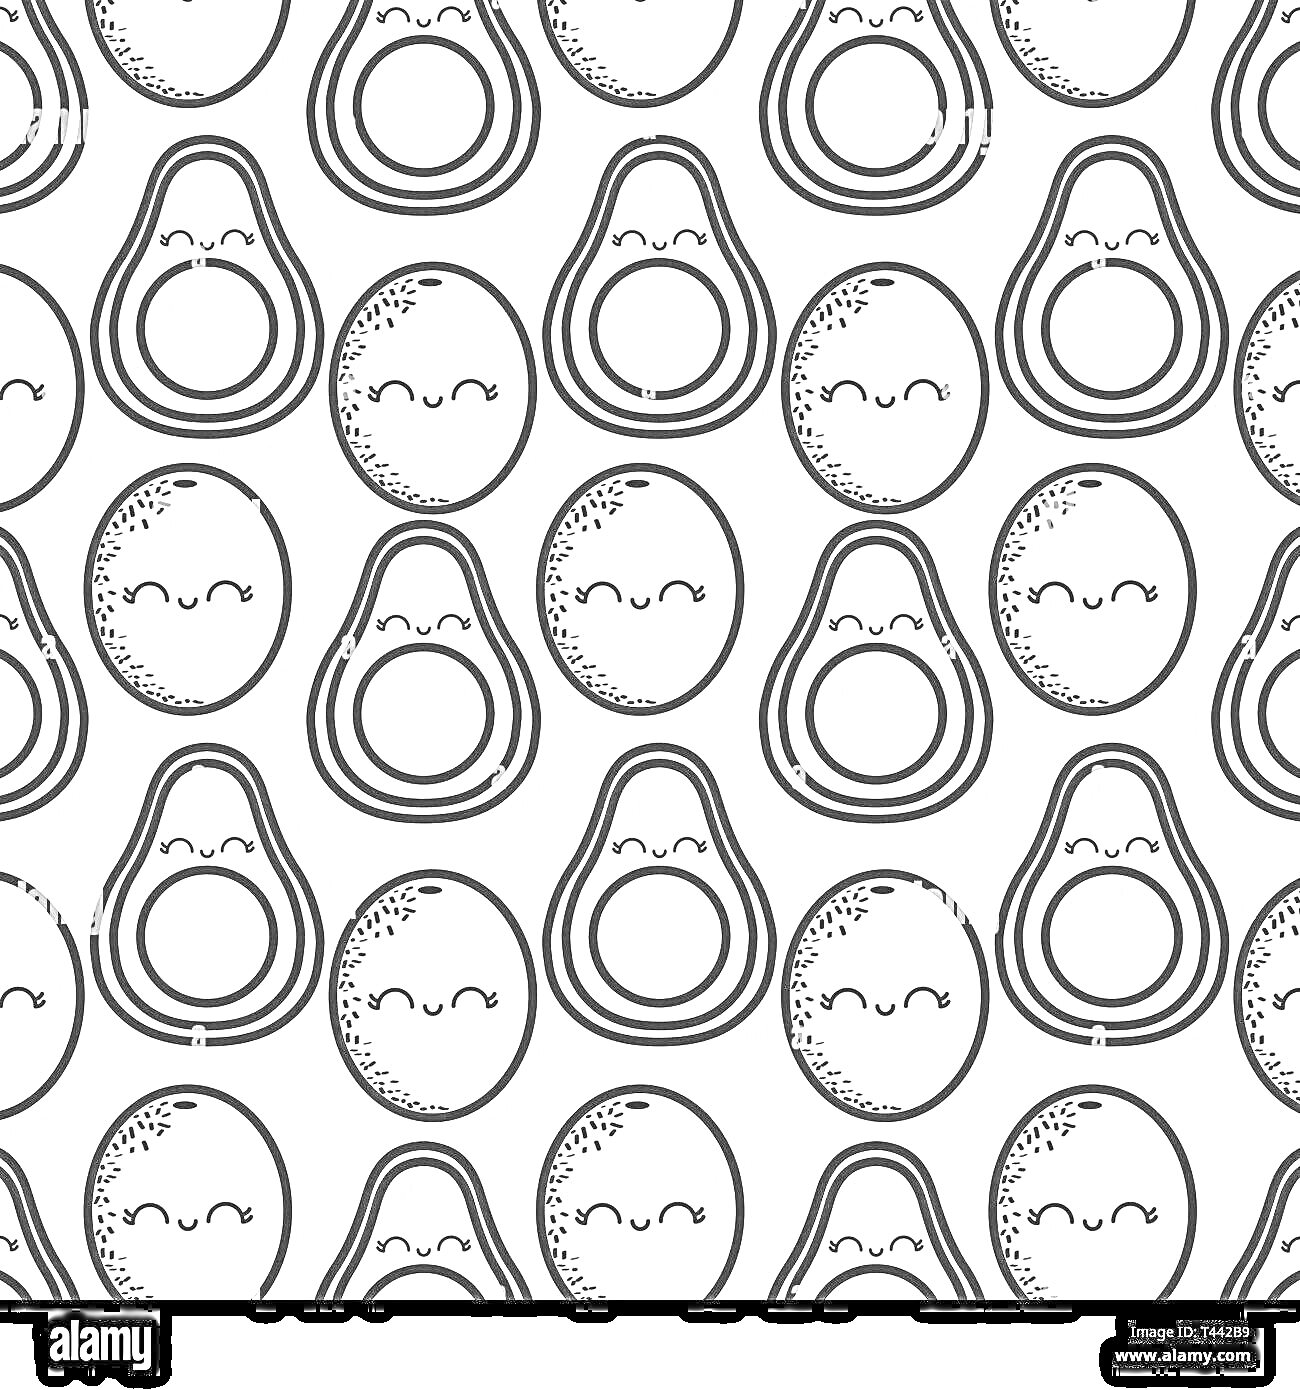 Раскраска Авокадо лица - половинки и целые с улыбающимися мордашками